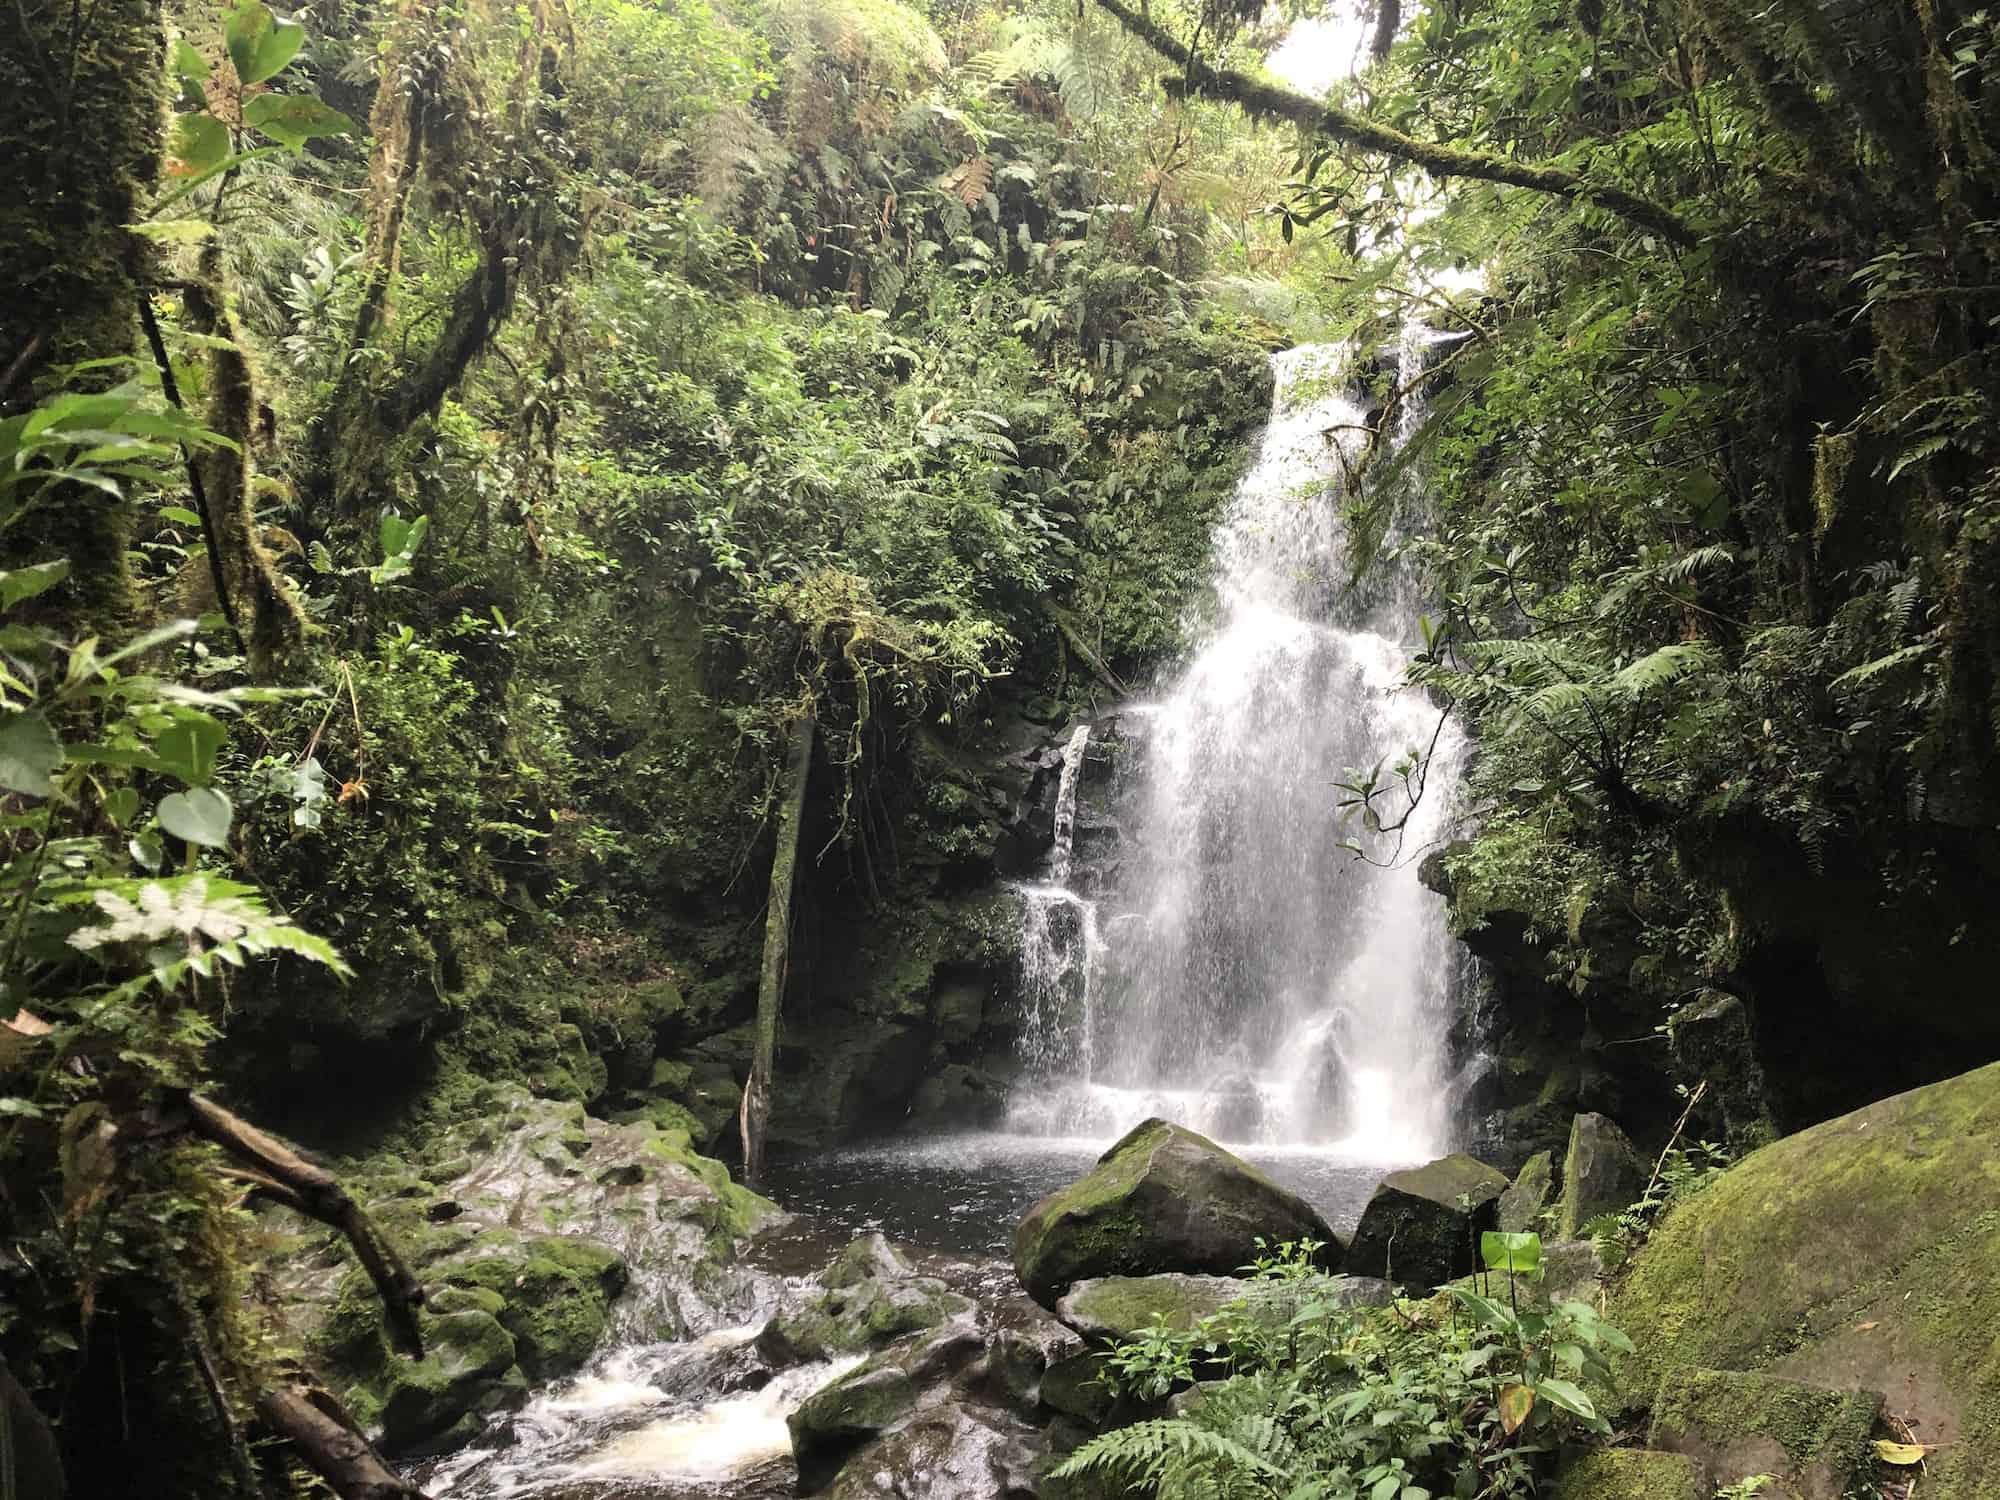 Waterfall at Cerro Dantas in Costa Rica